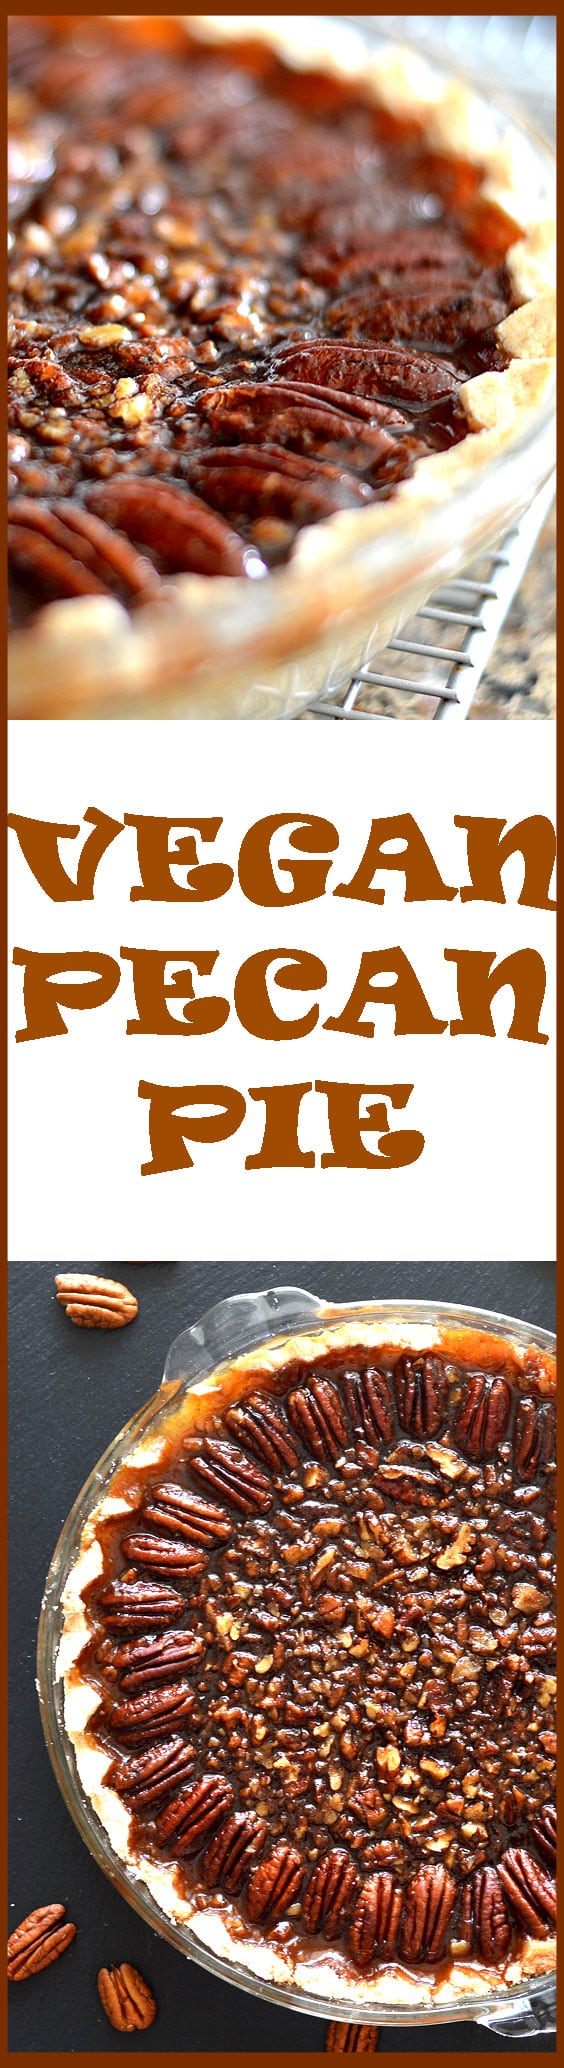 Vegan Pecan Pie